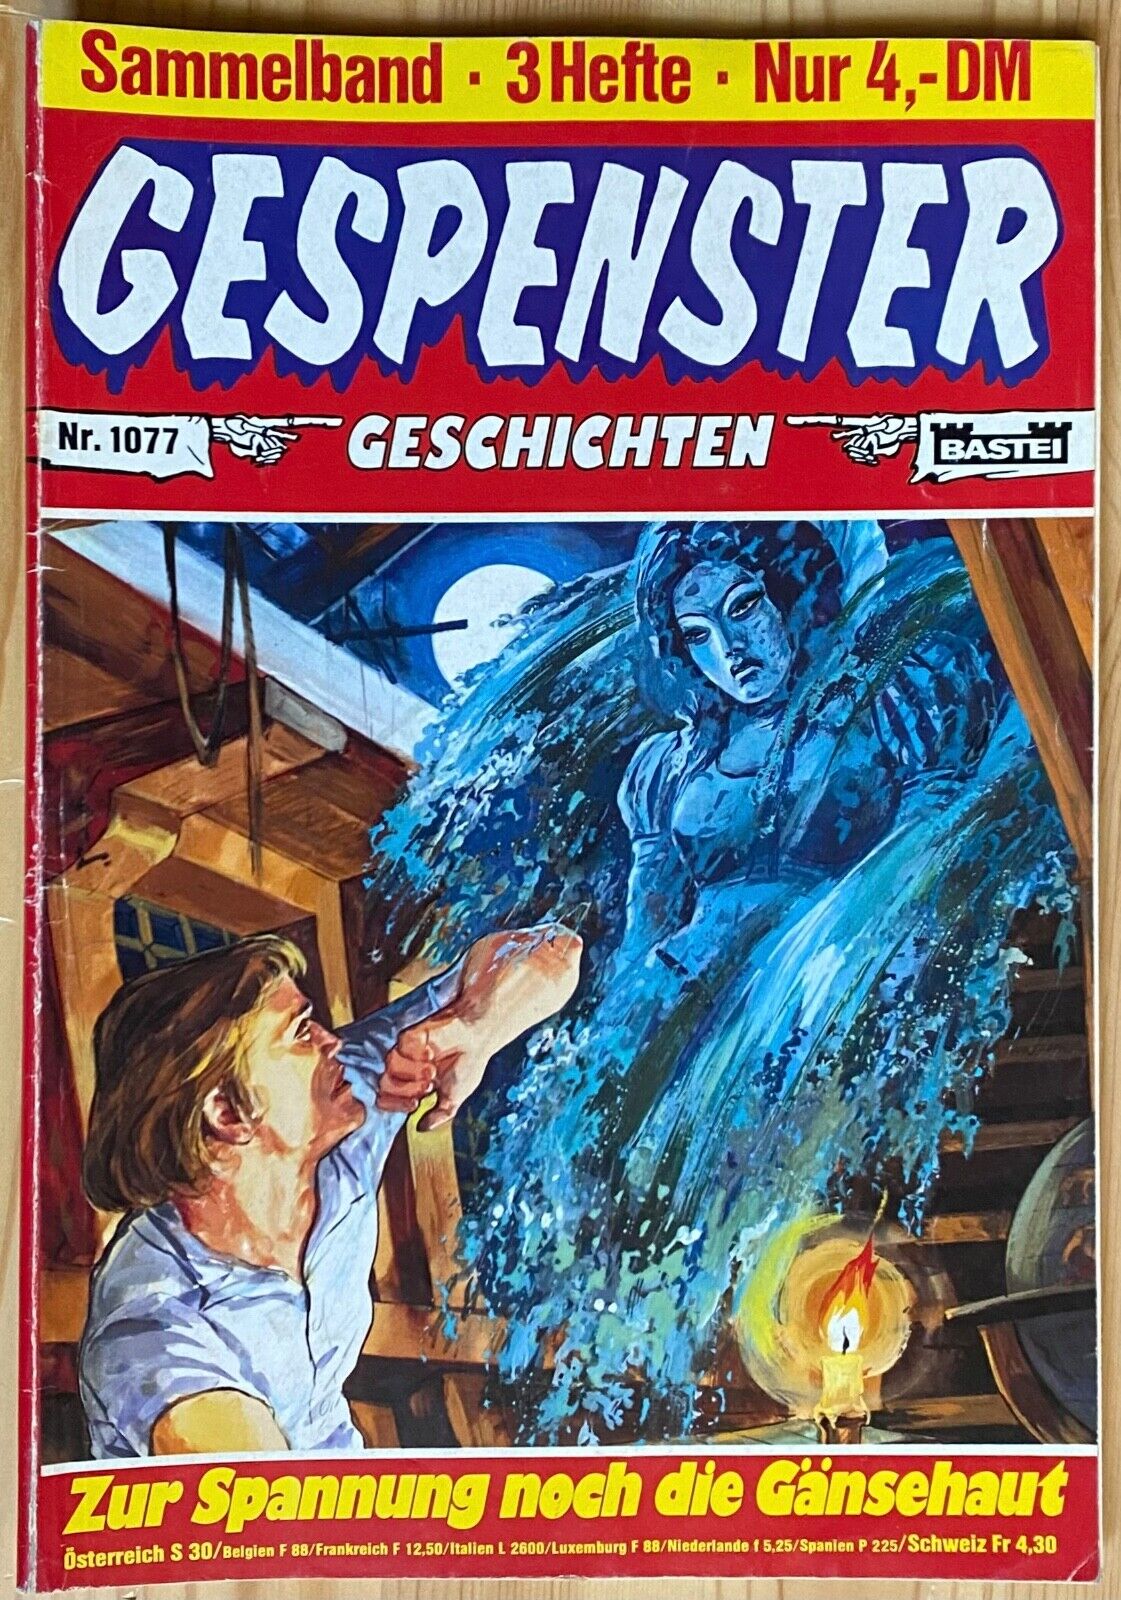 GESPENSTER GESCHICHTEN SAMMELBAND Nr. 1077, Bastei Verlag